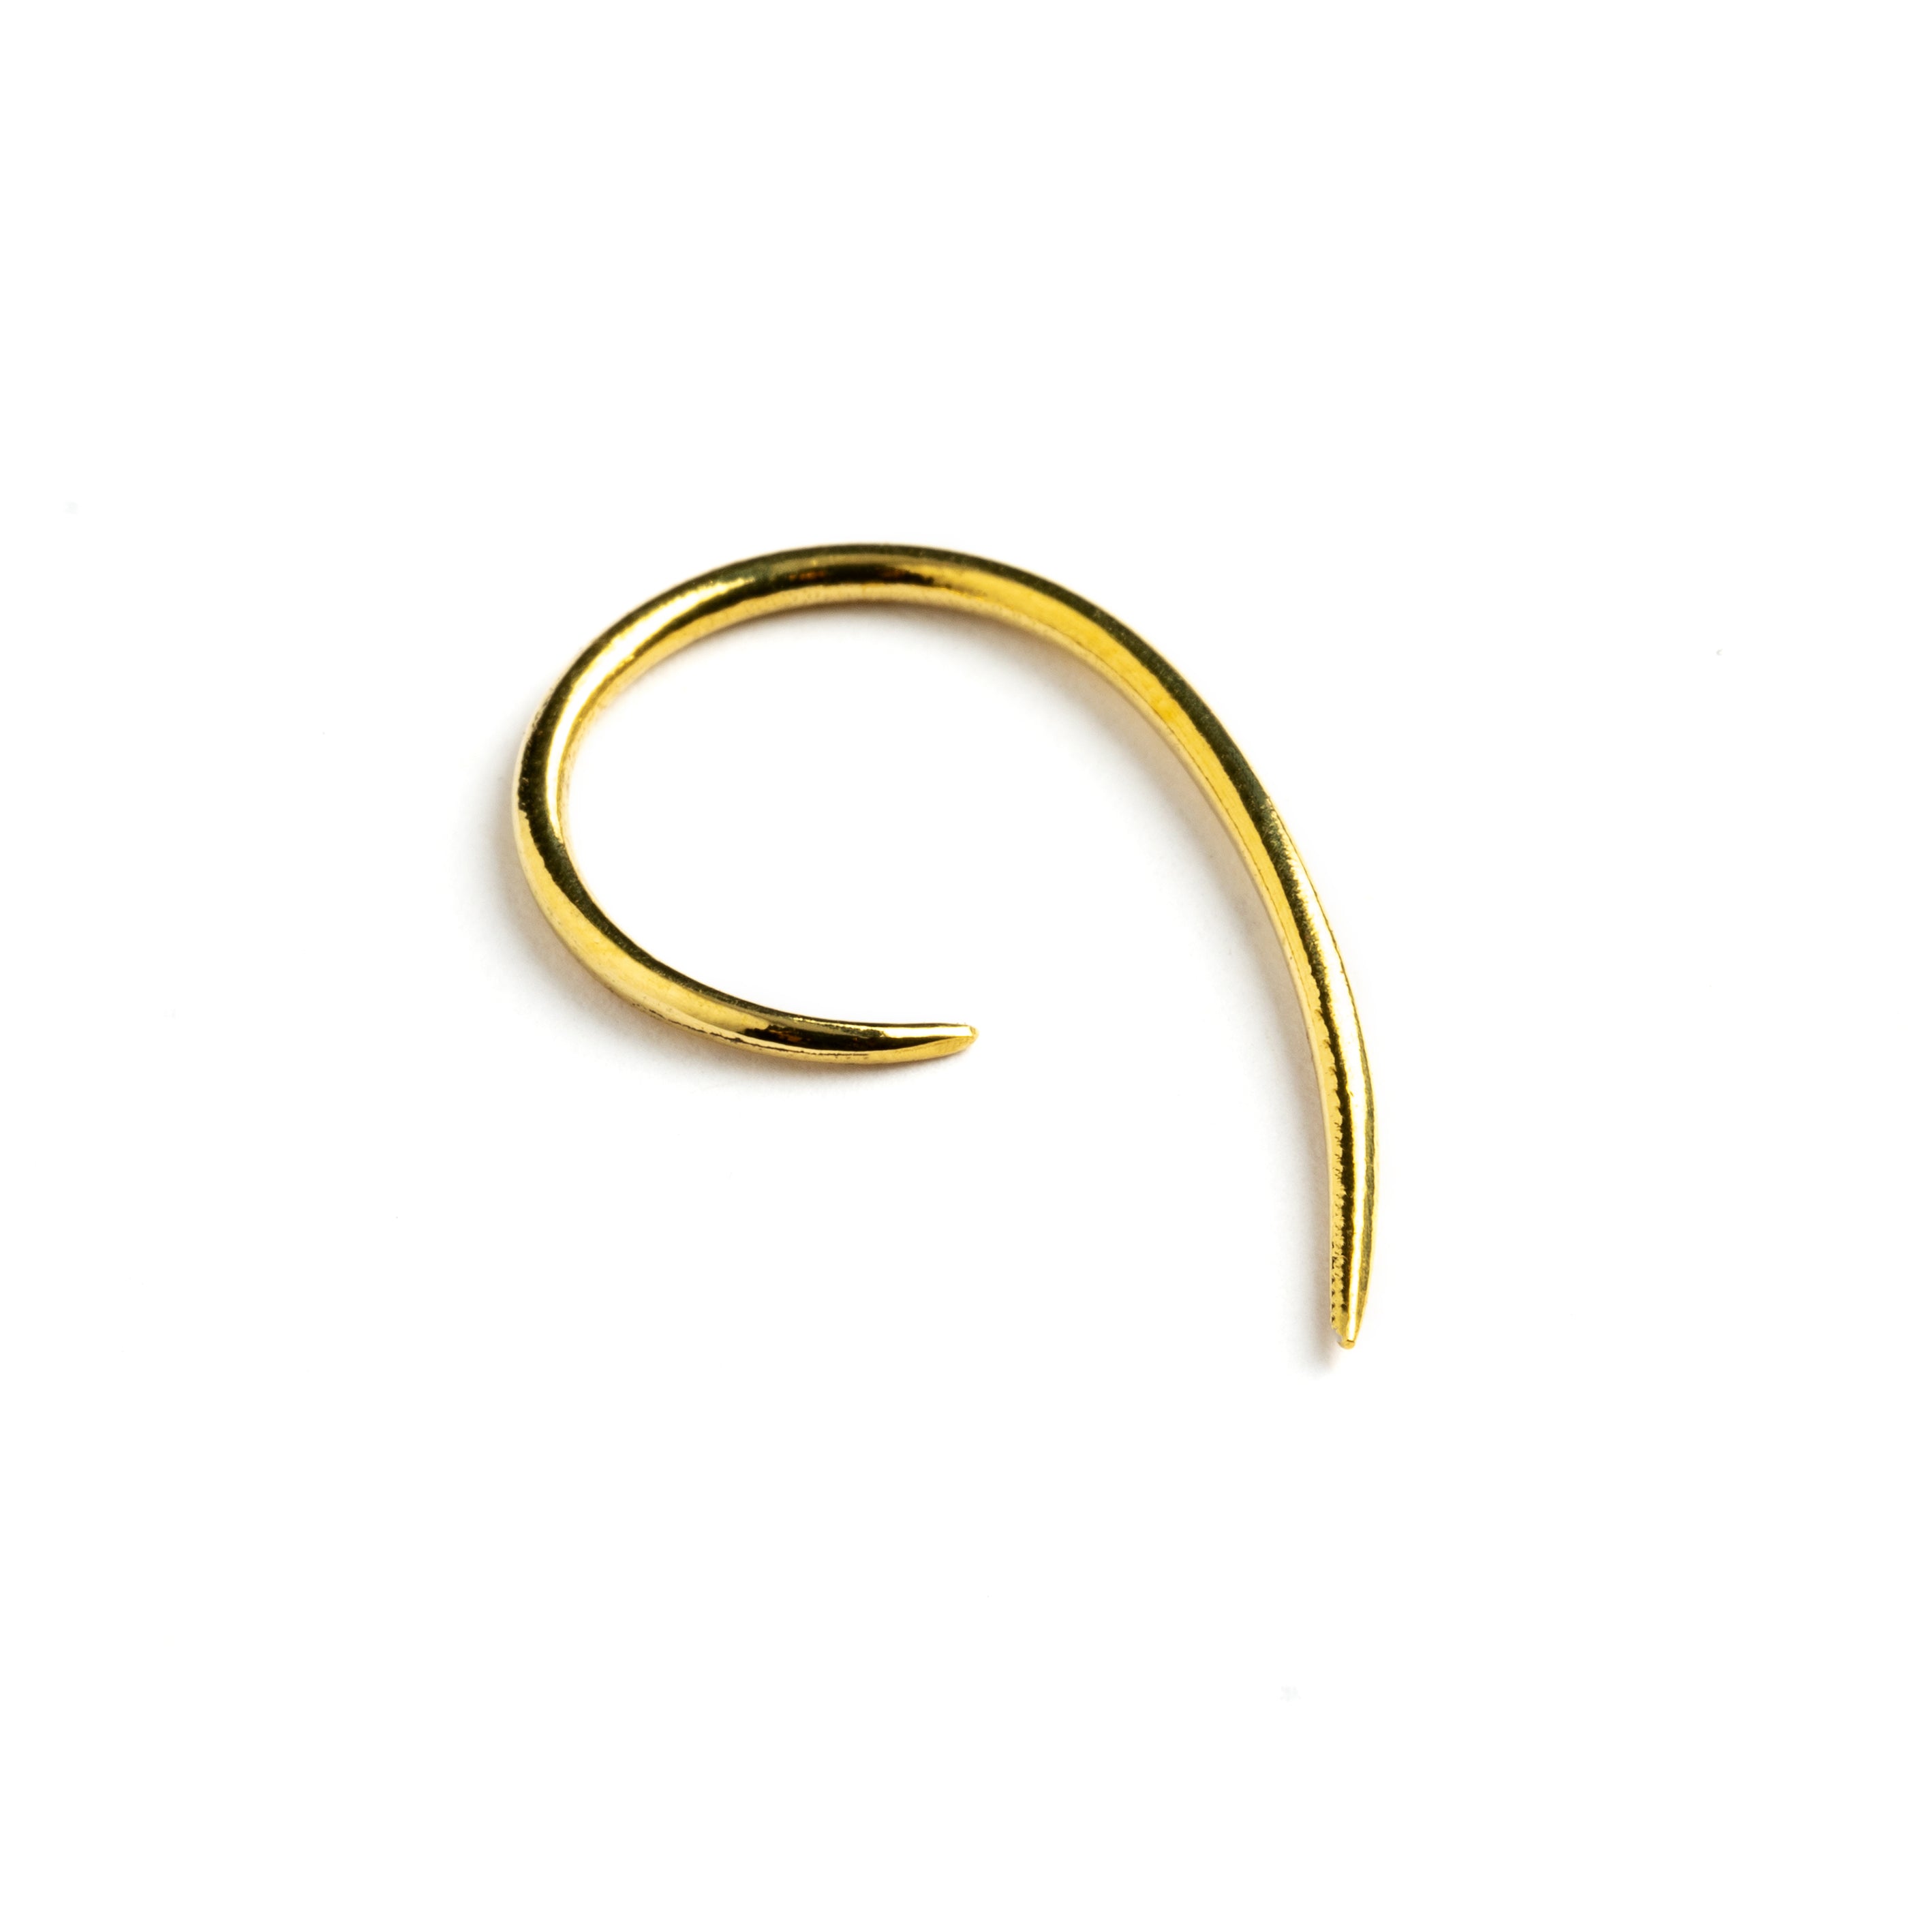 single golden brass wire hook earring left side view